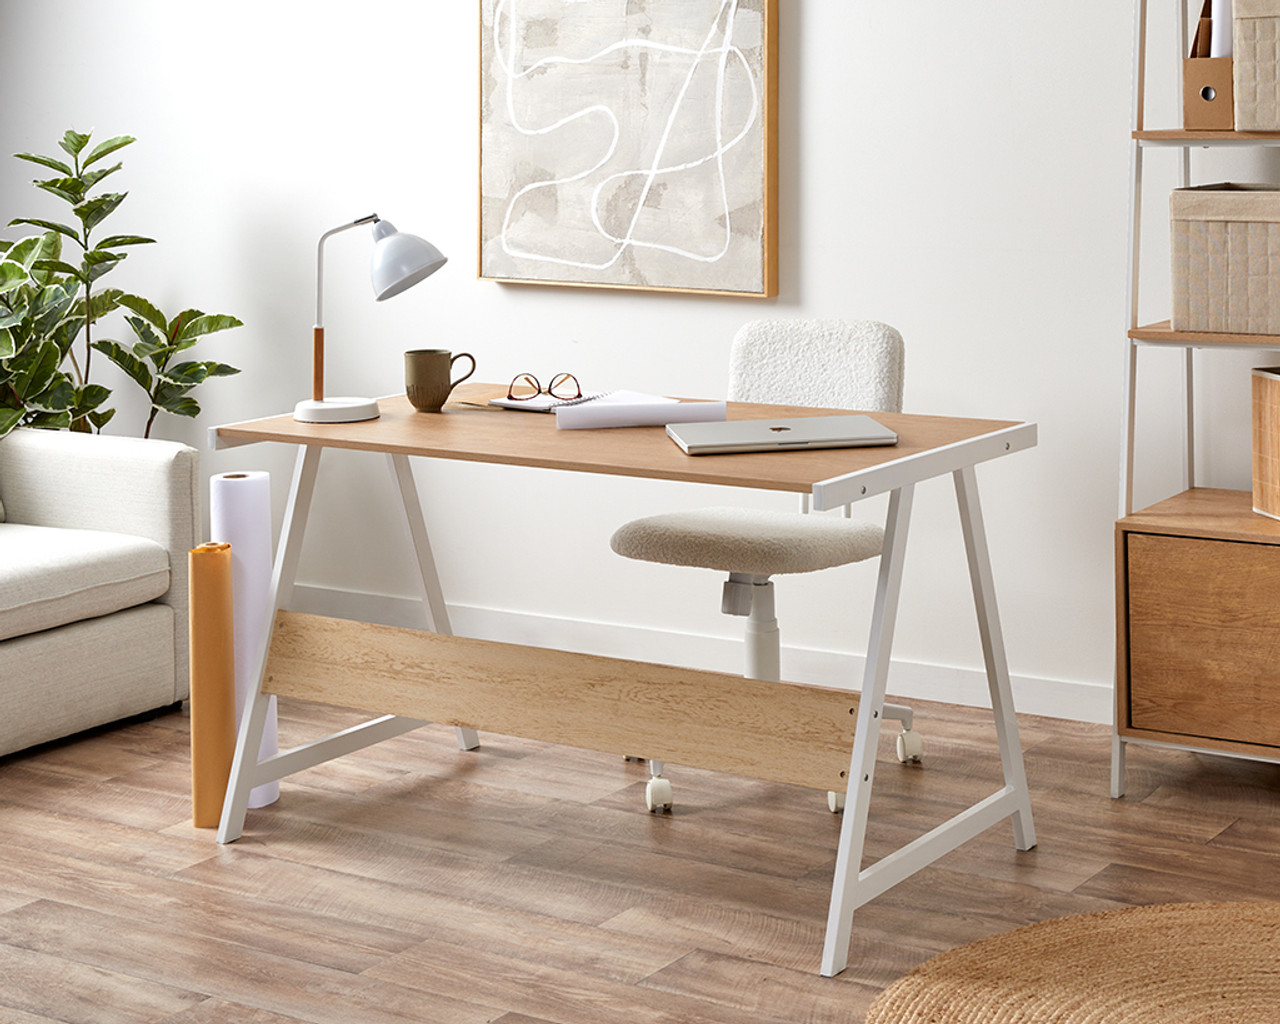 Brixton Trestle Desk - White, Home Furniture